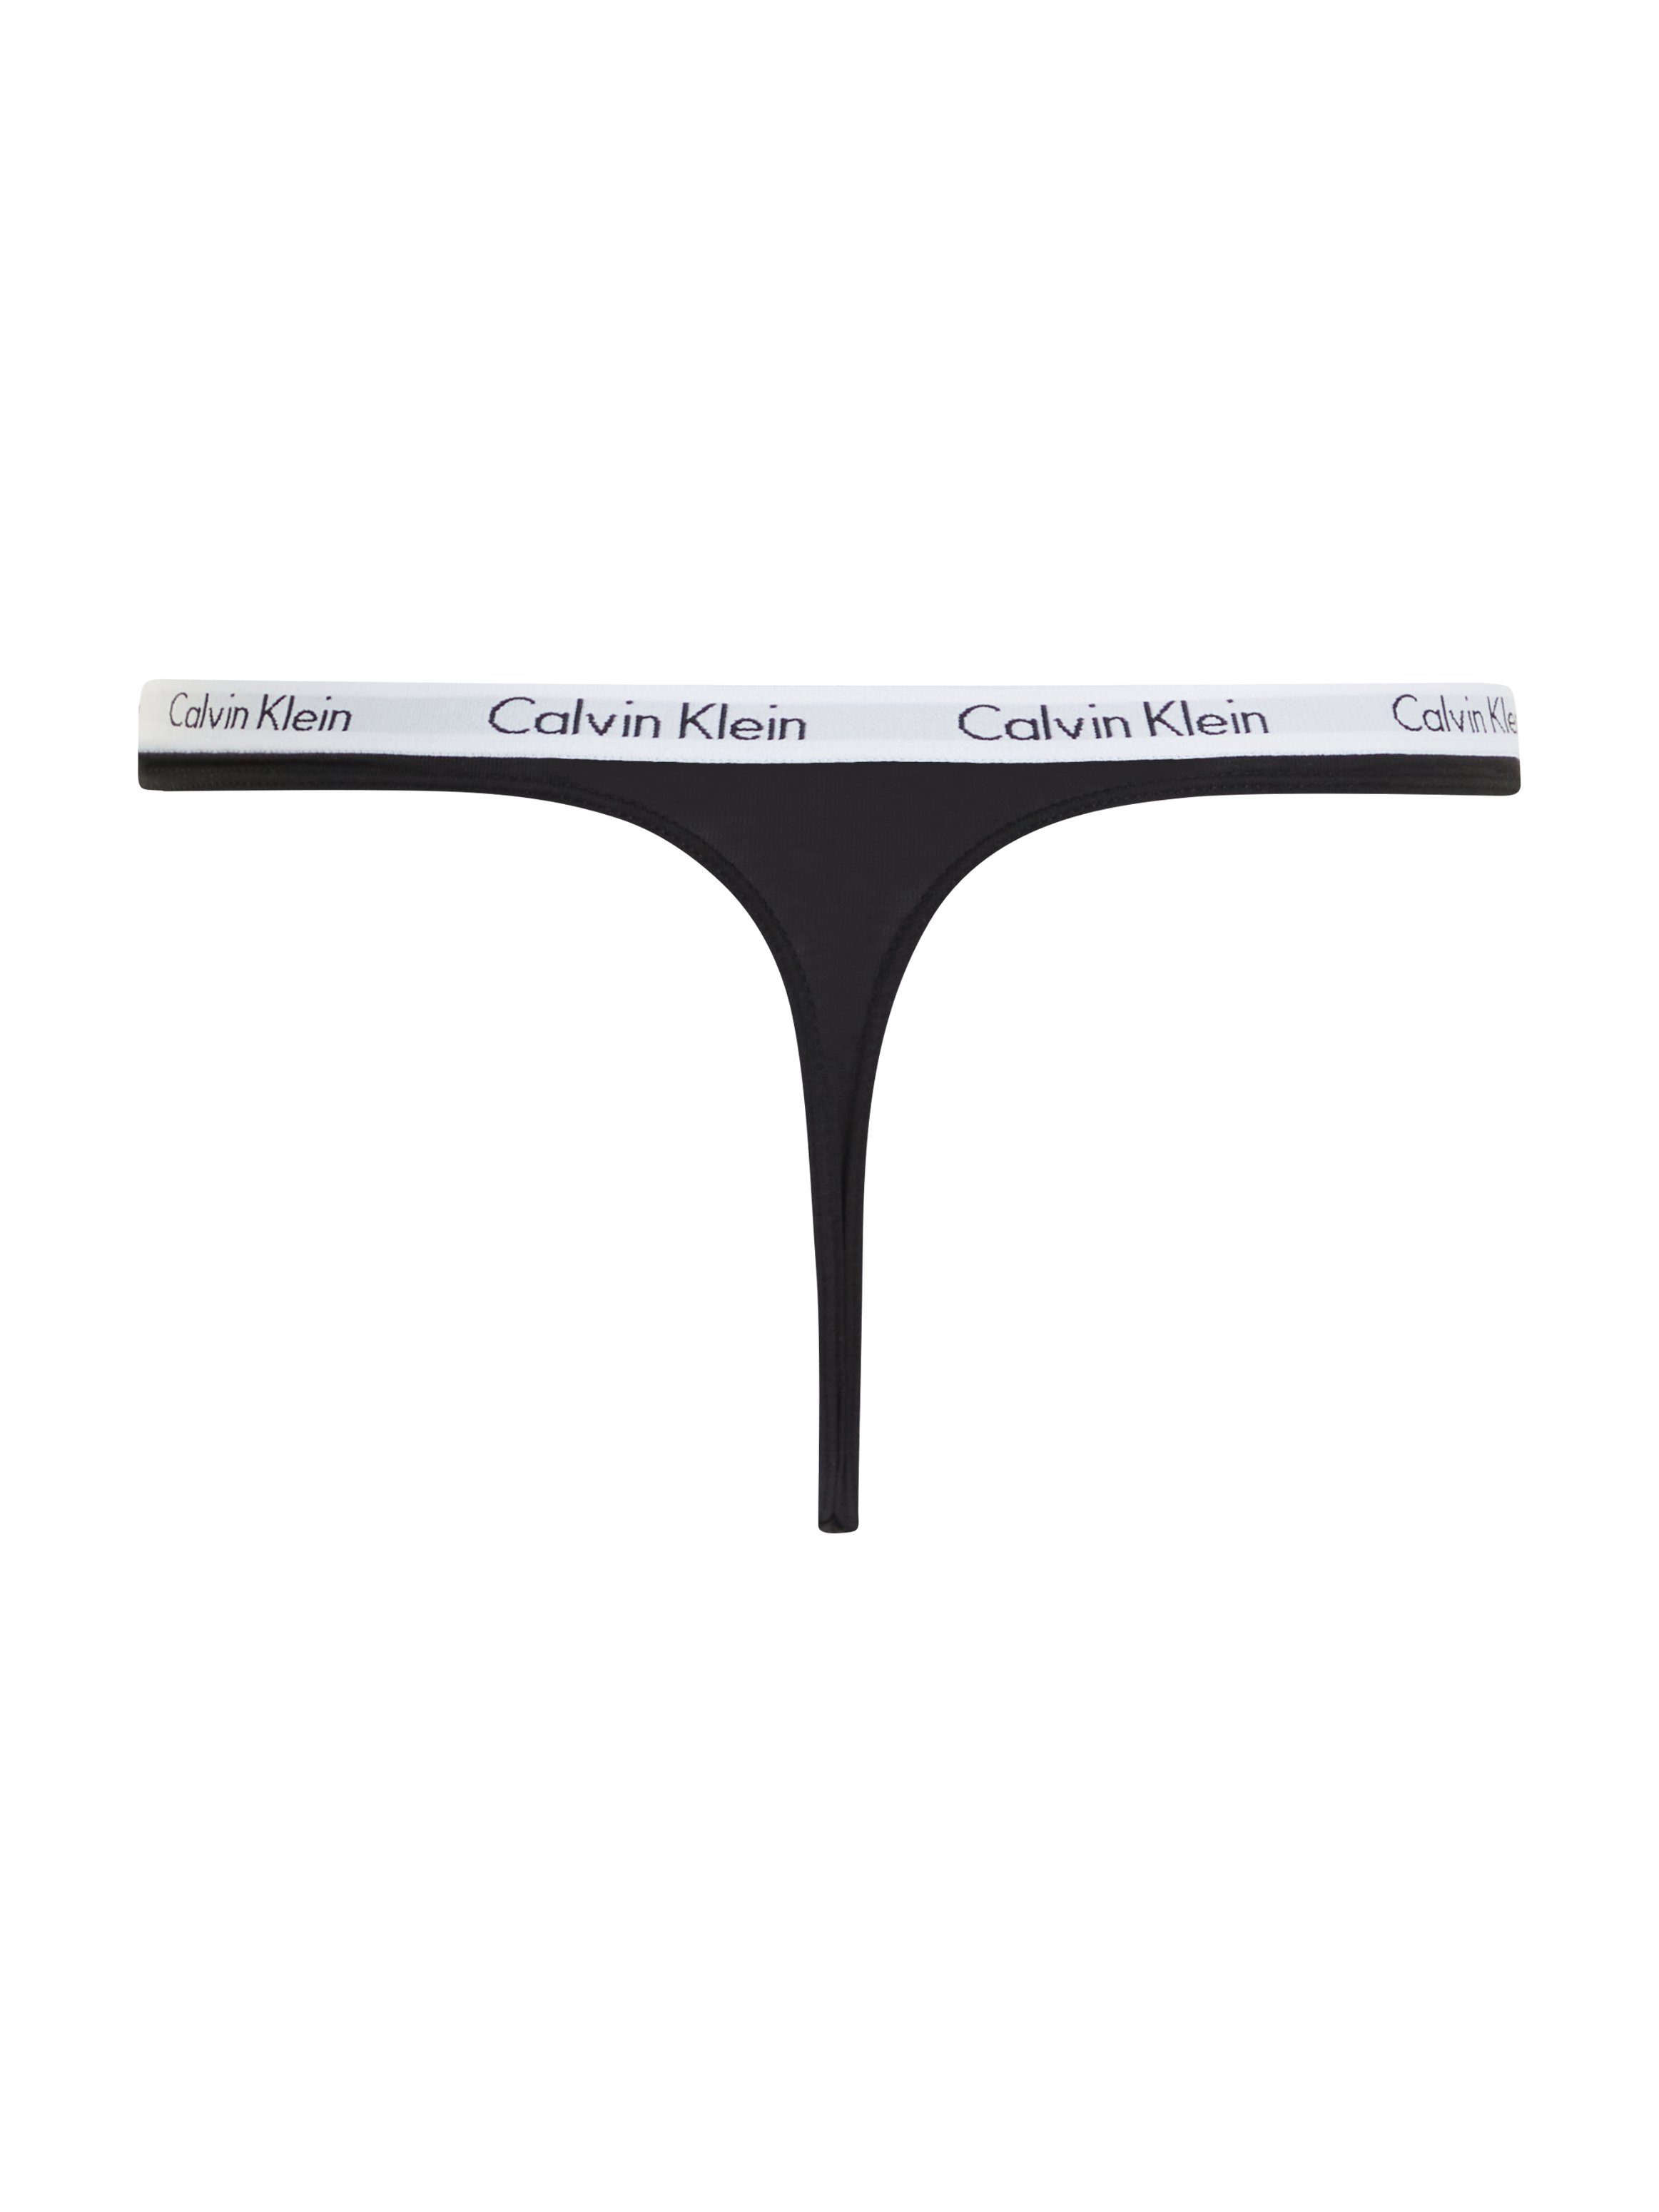 mit Klein Logobund T-String Underwear Calvin klassischem schwarz